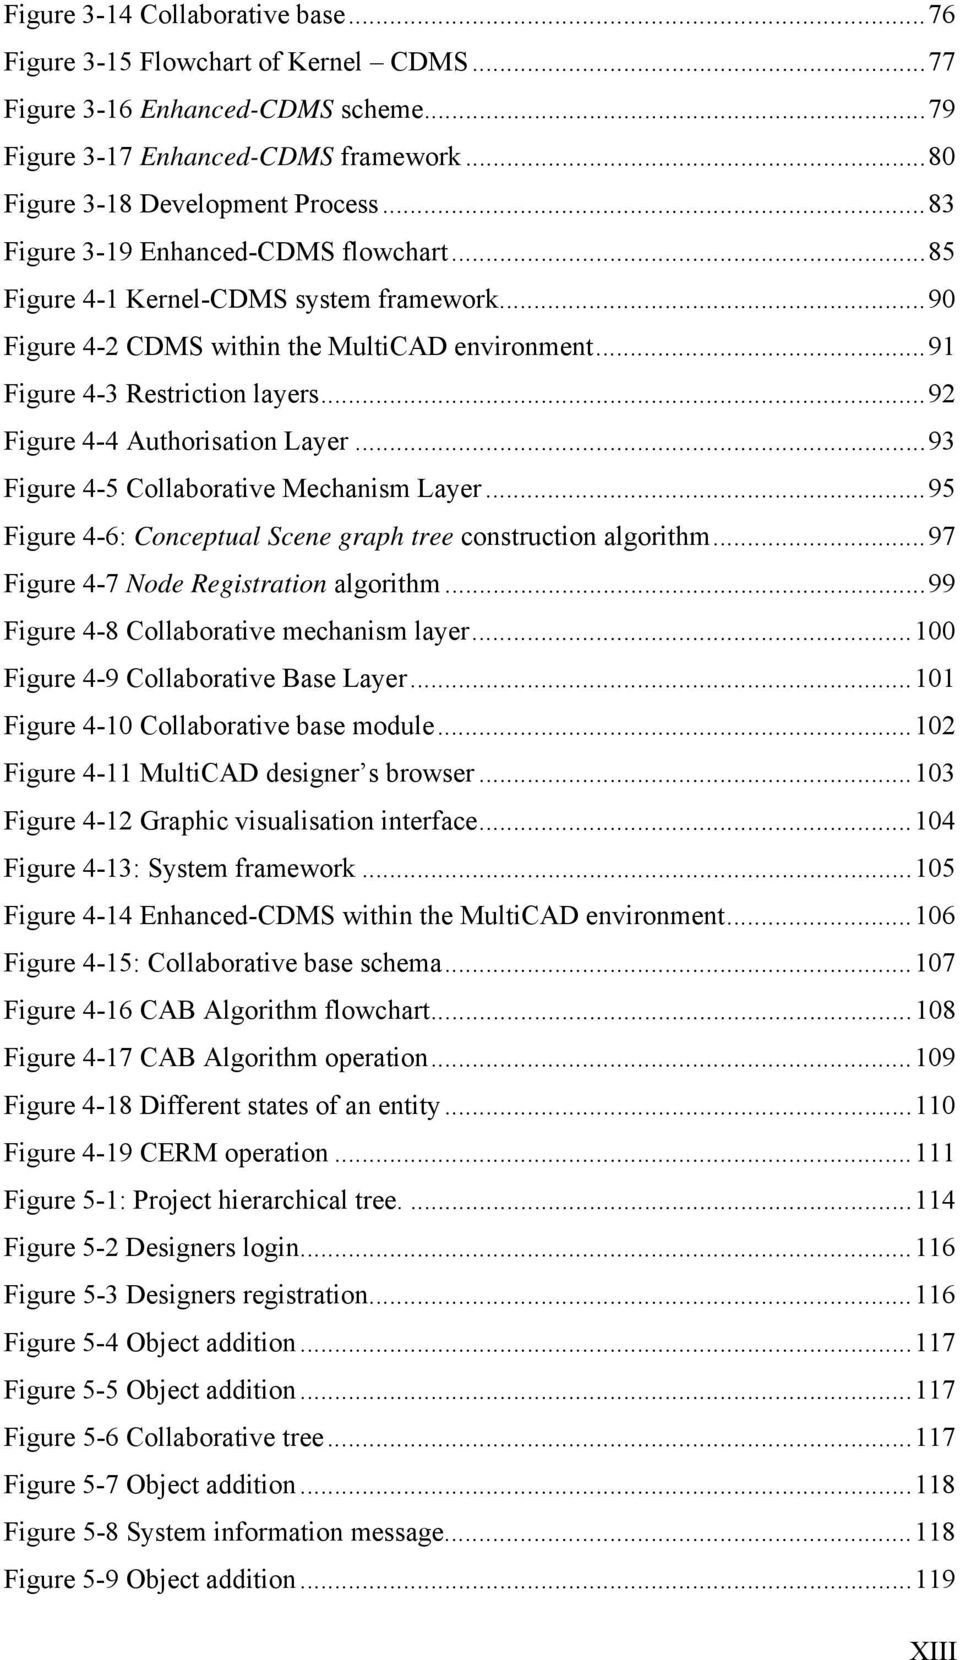 ..92 Figure 4-4 Authorisation Layer...93 Figure 4-5 Collaborative Mechanism Layer...95 Figure 4-6: Conceptual Scene graph tree construction algorithm...97 Figure 4-7 Node Registration algorithm.